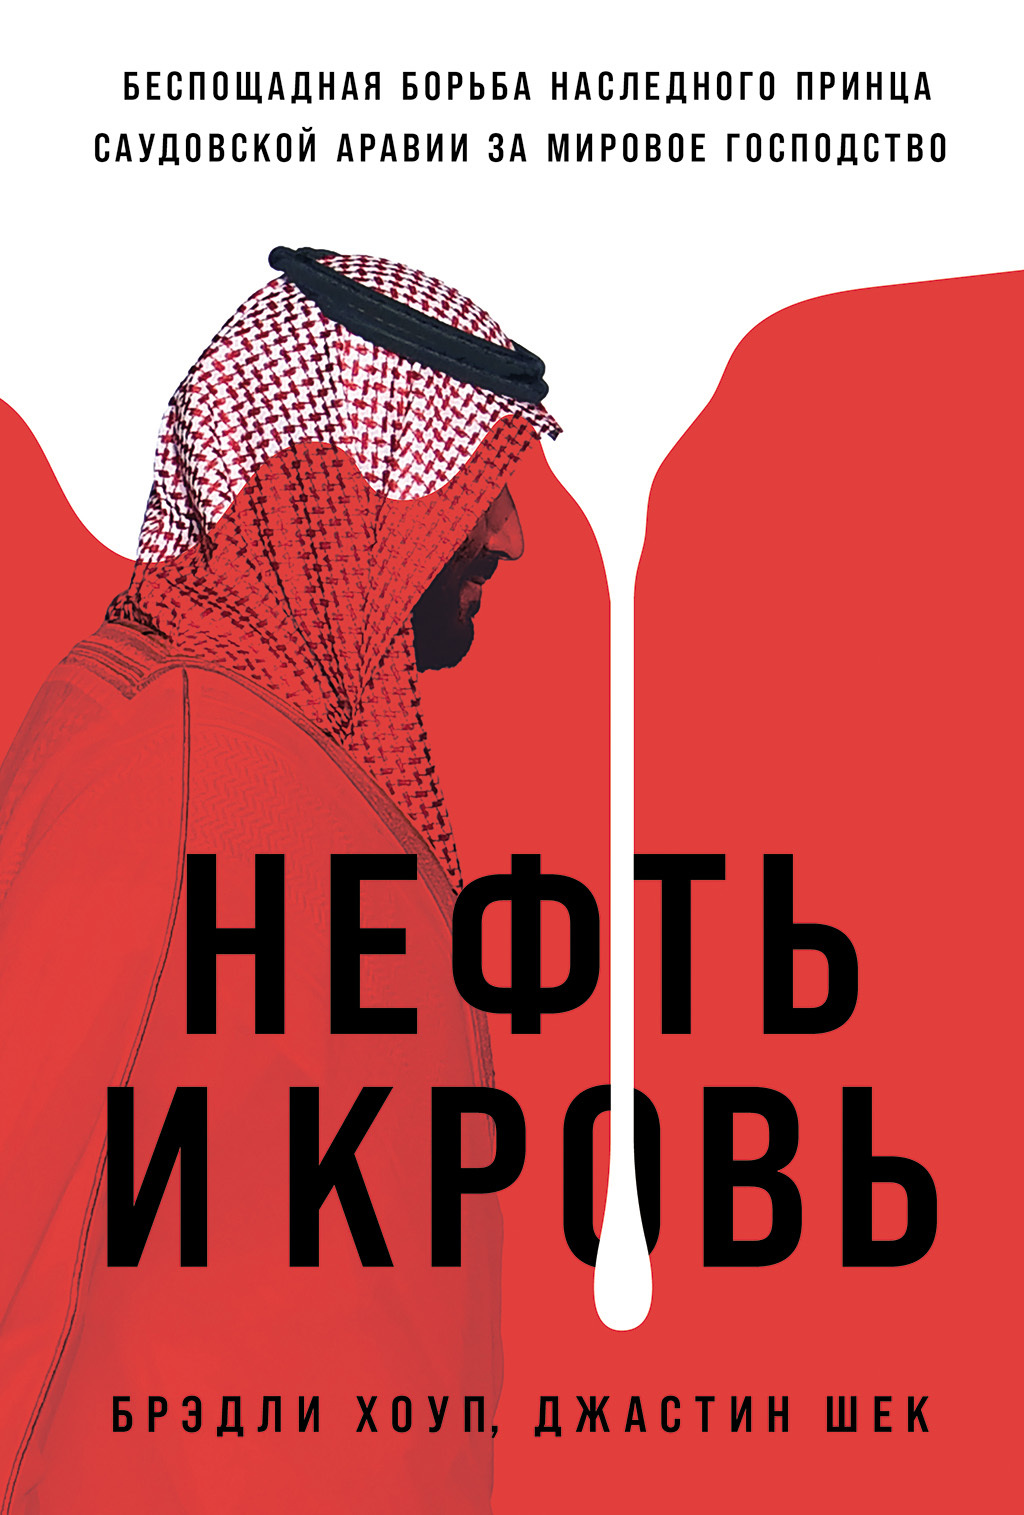 Нефть и кровь: Беспощадная борьба наследного принца Саудовской Аравии за мировое господство - Джастин Шек